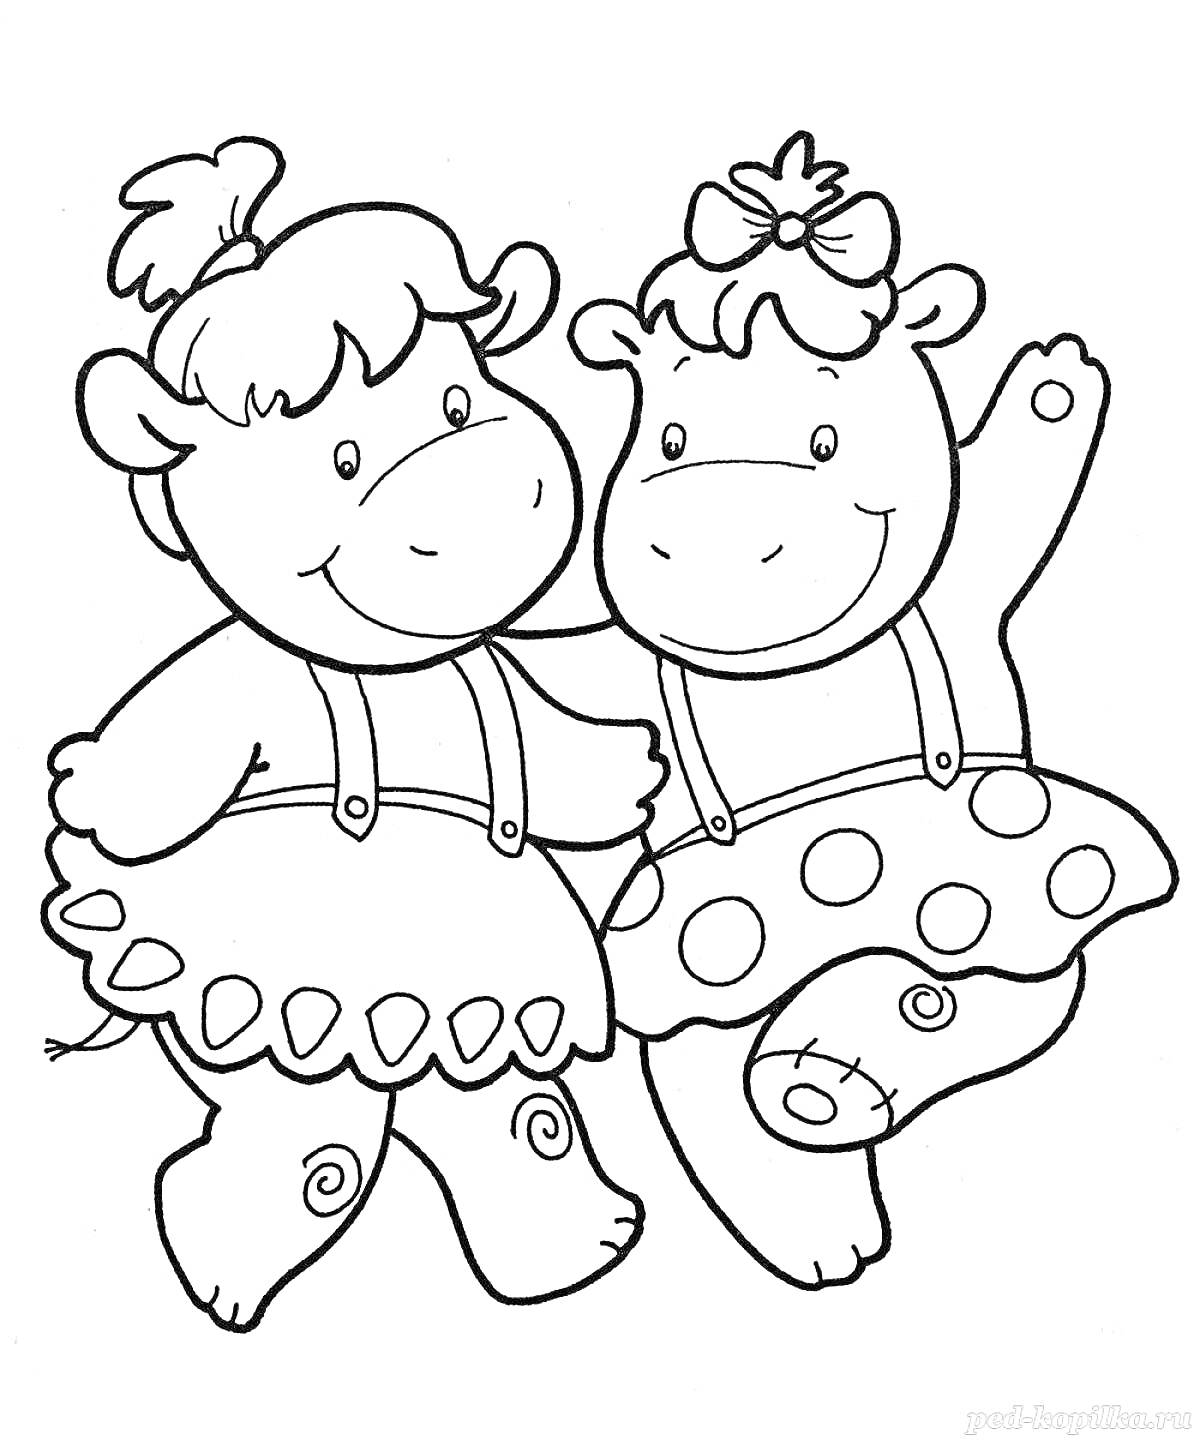 Раскраска Два бегемота в юбках с подтяжками, один с бантом на голове и поднятой рукой.